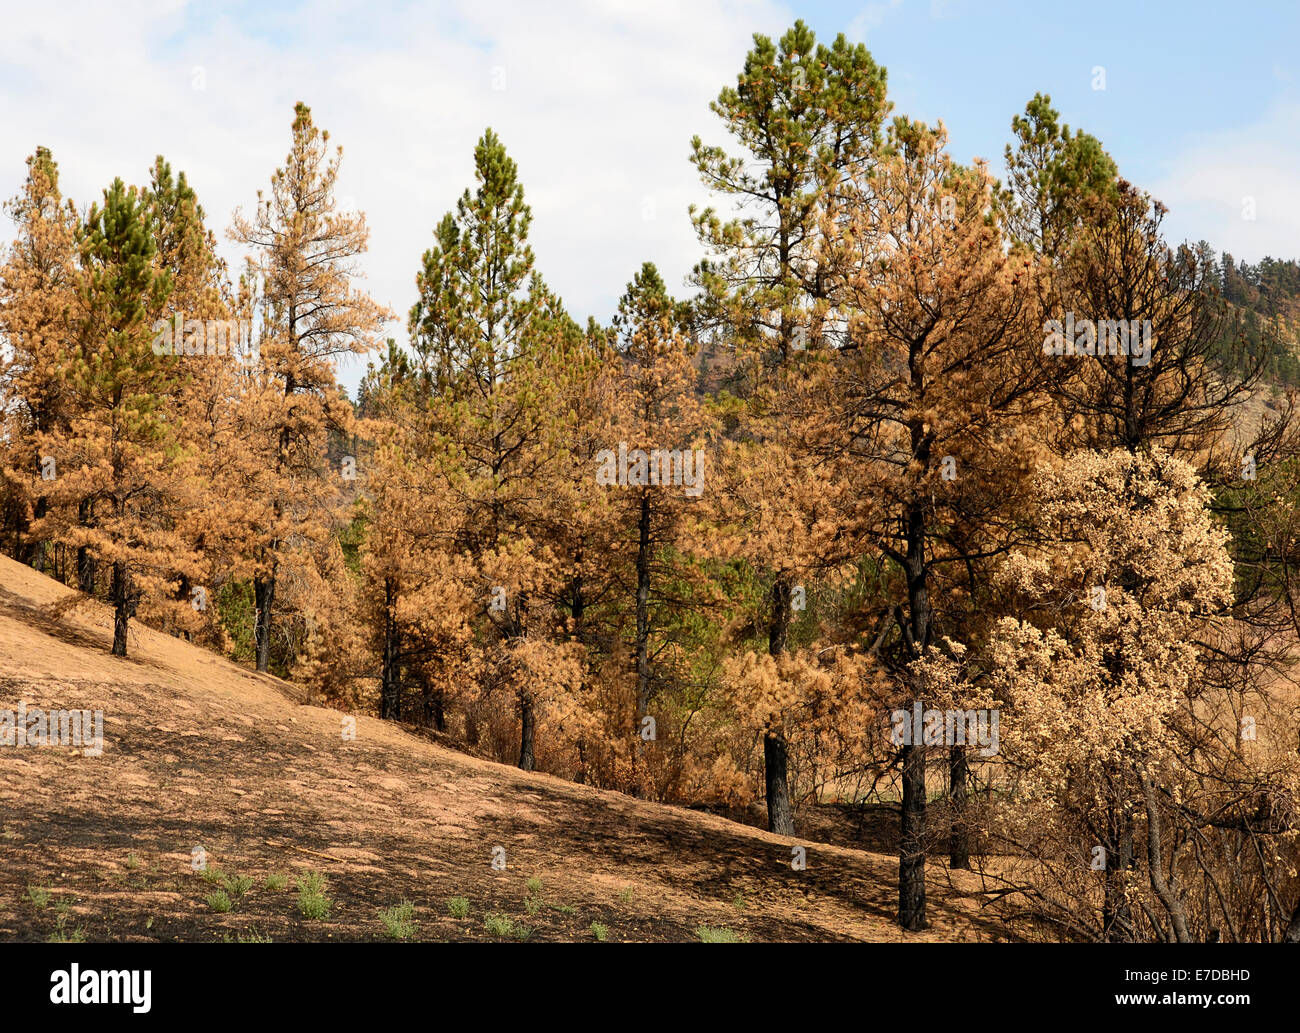 Secuelas de swift dejando incendios forestales queman pinos y tierra quemada. Foto de stock